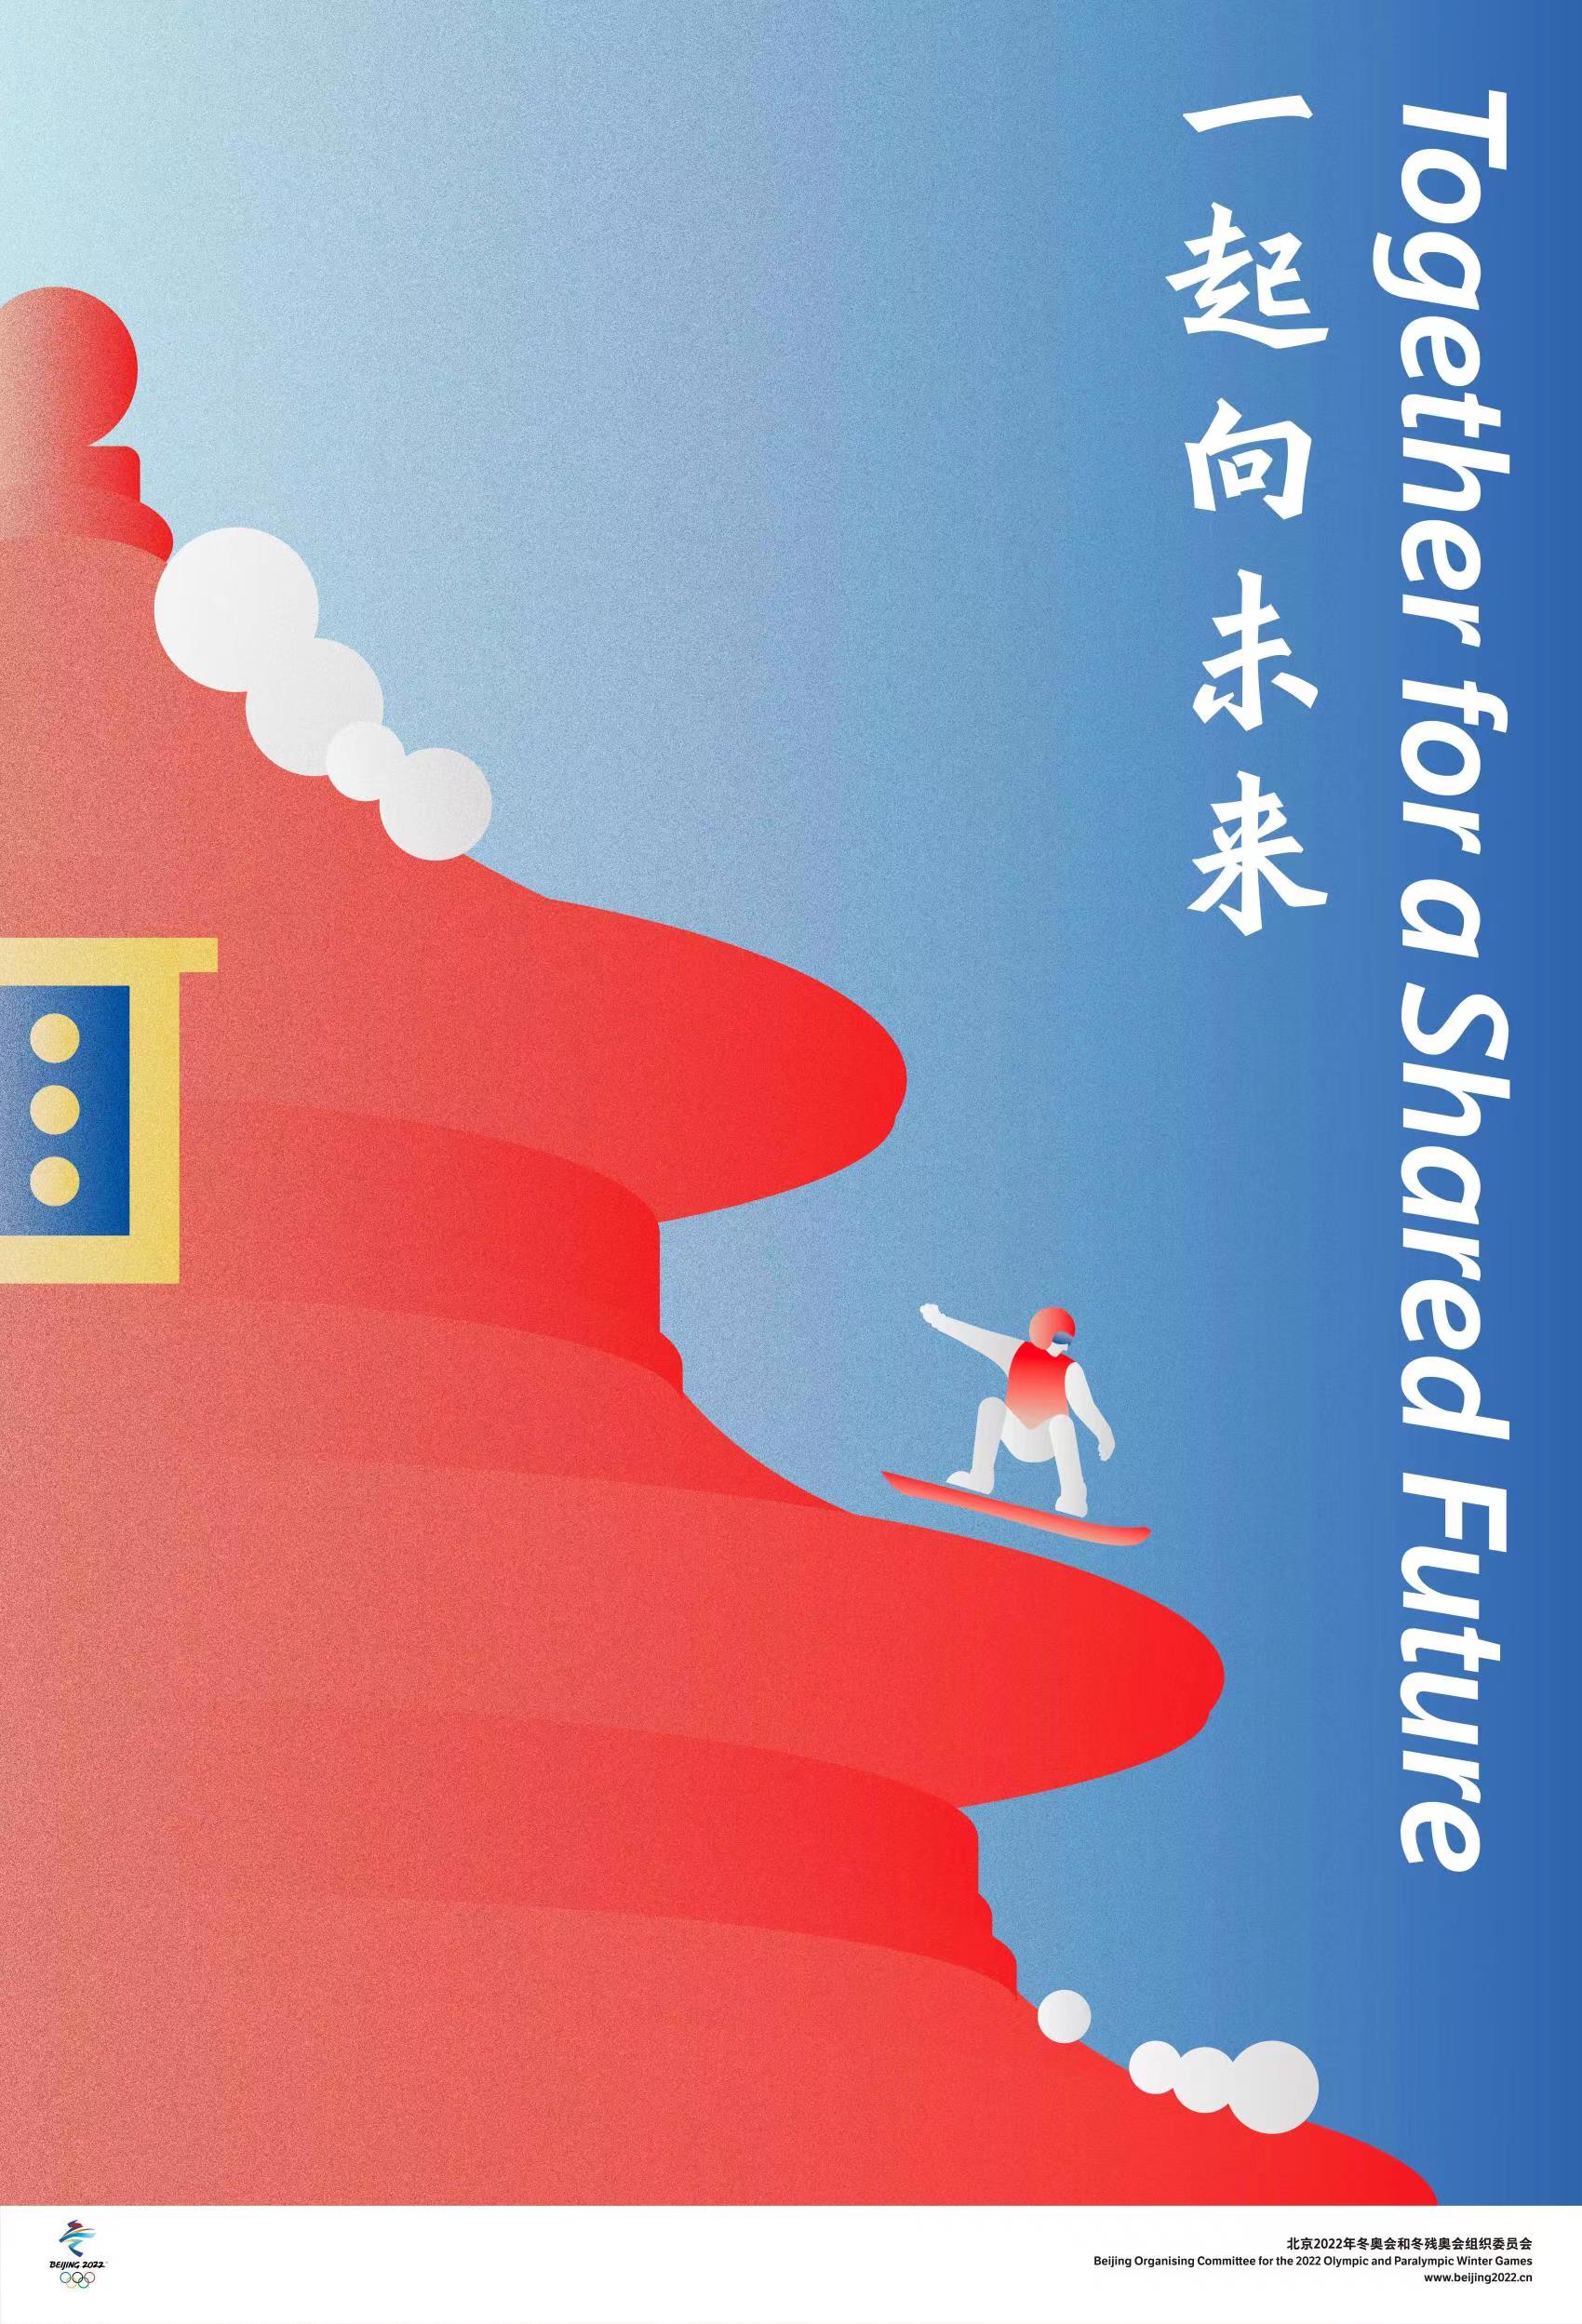 北京2022年冬奥会和冬残奥会宣传海报